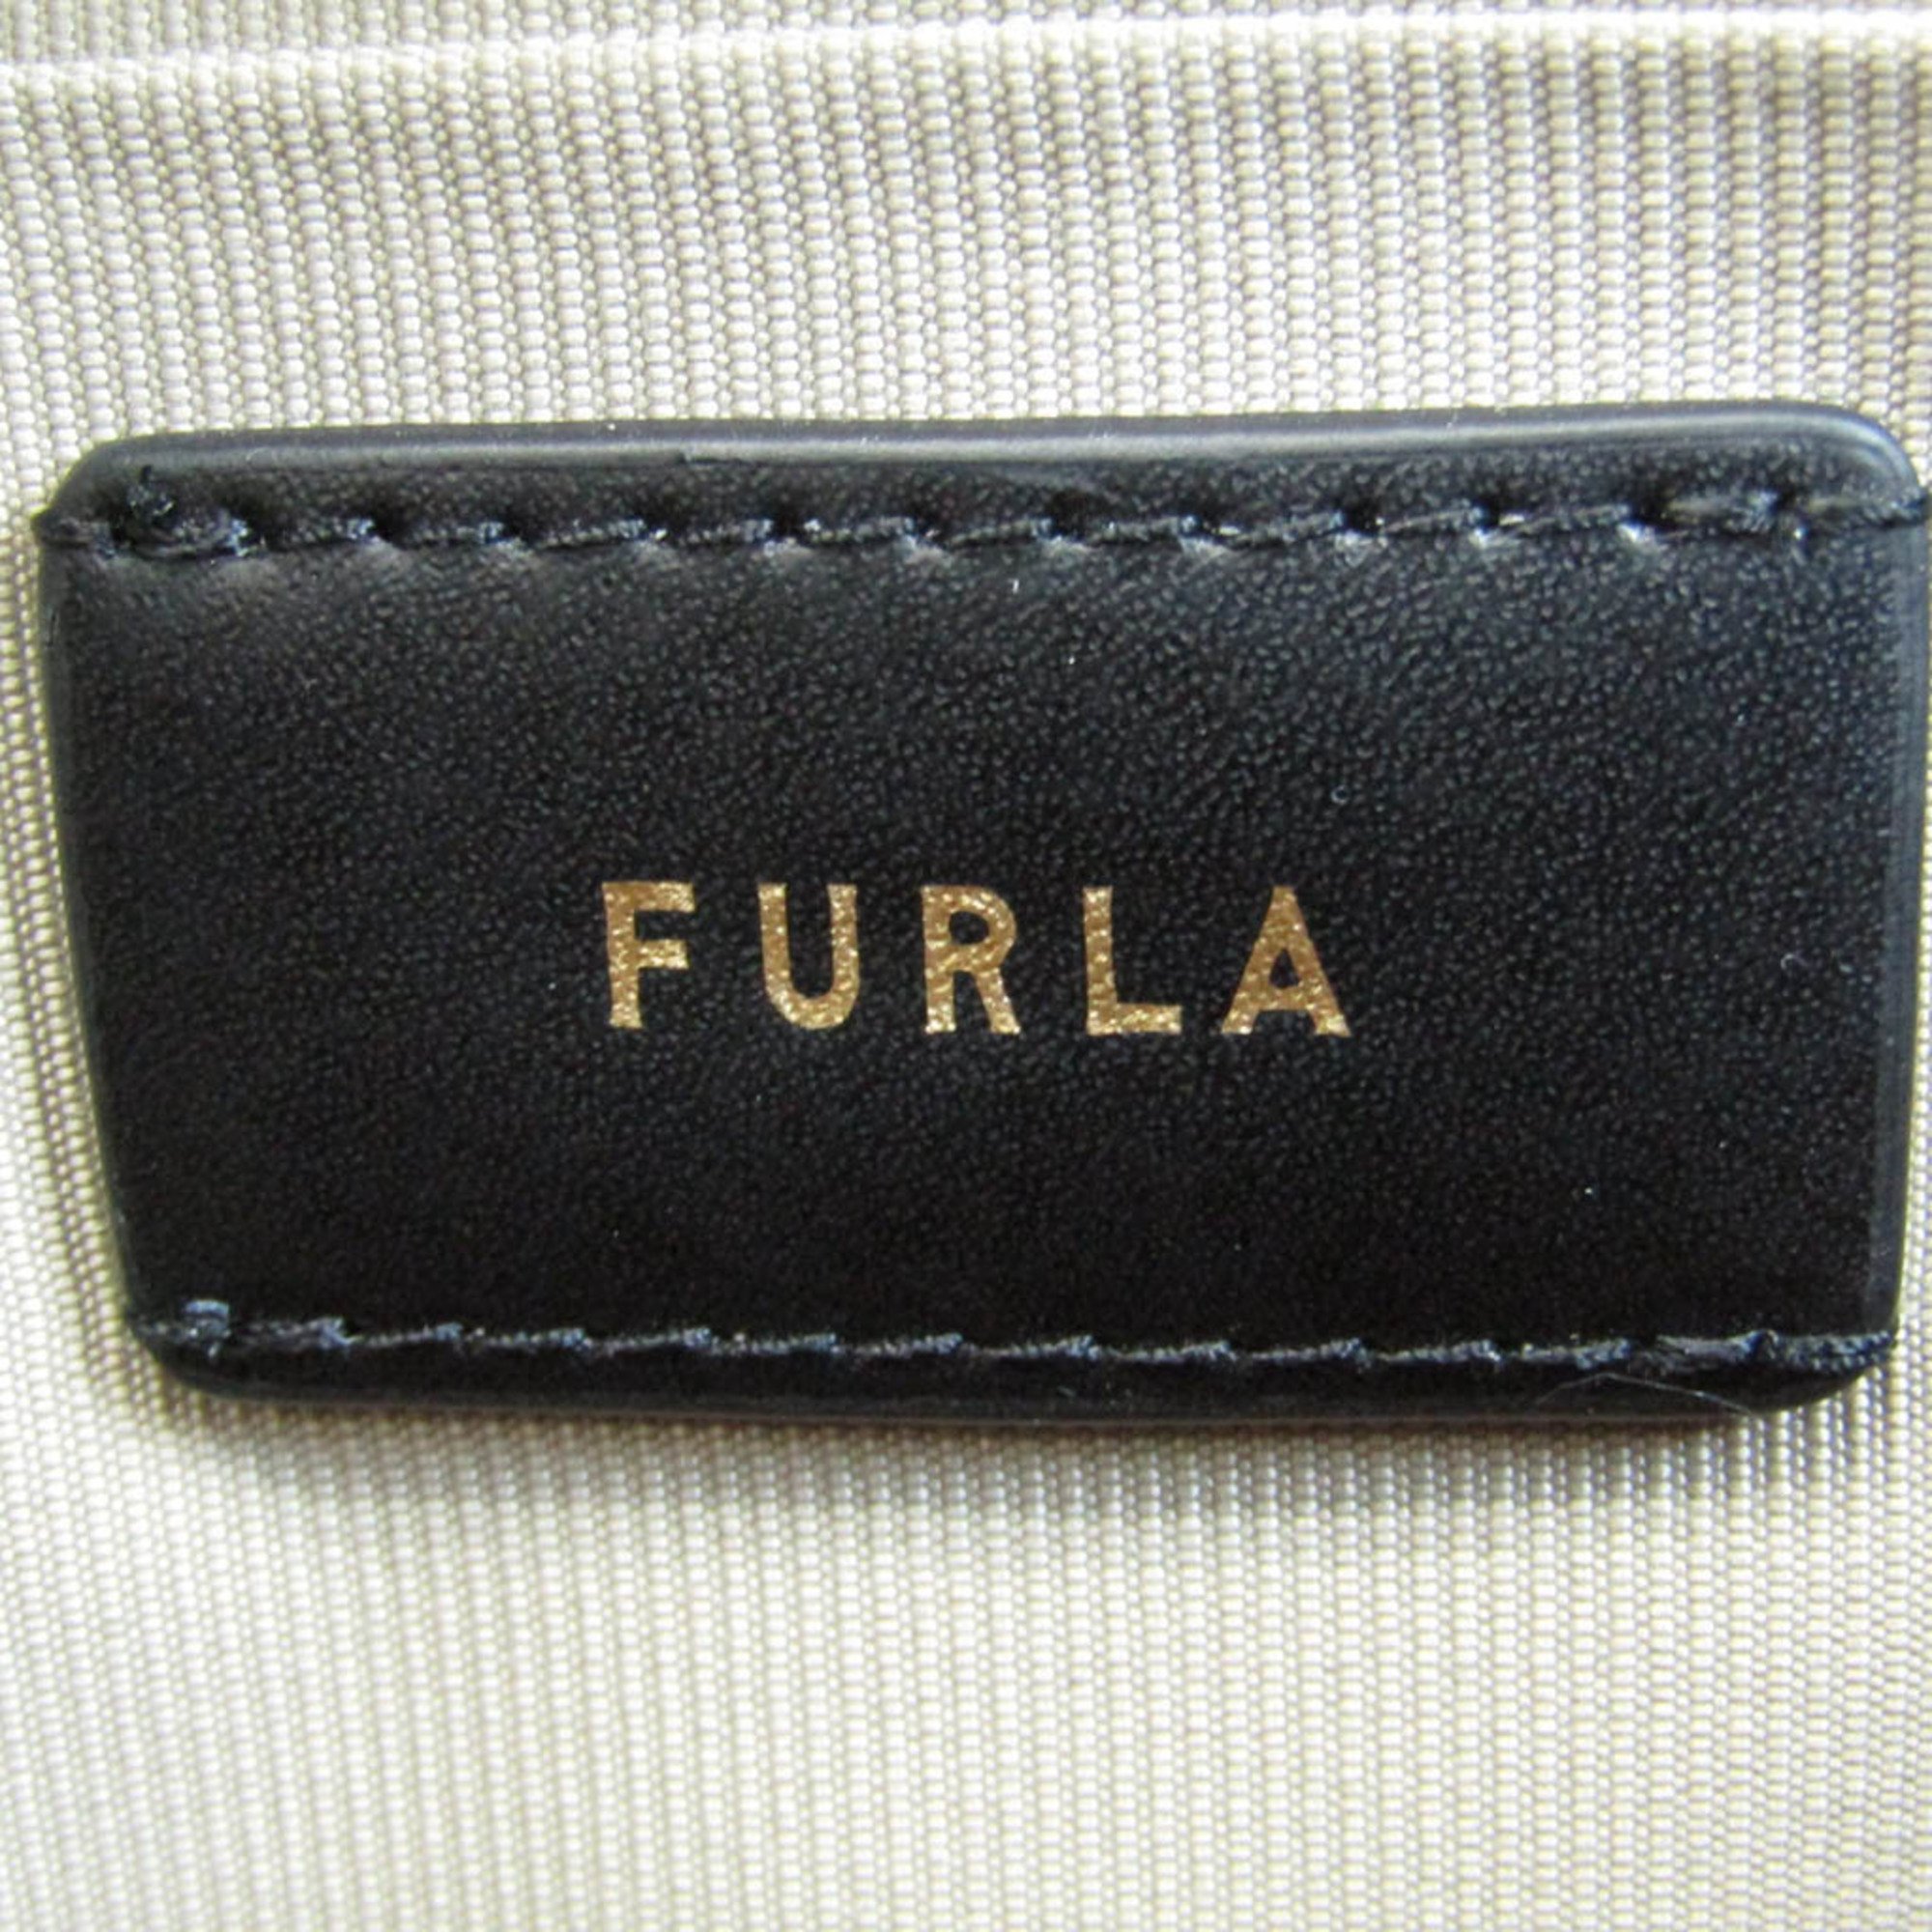 Furla All-over Pattern Women's Leather,PVC Handbag,Shoulder Bag Beige,Brown,Red Color